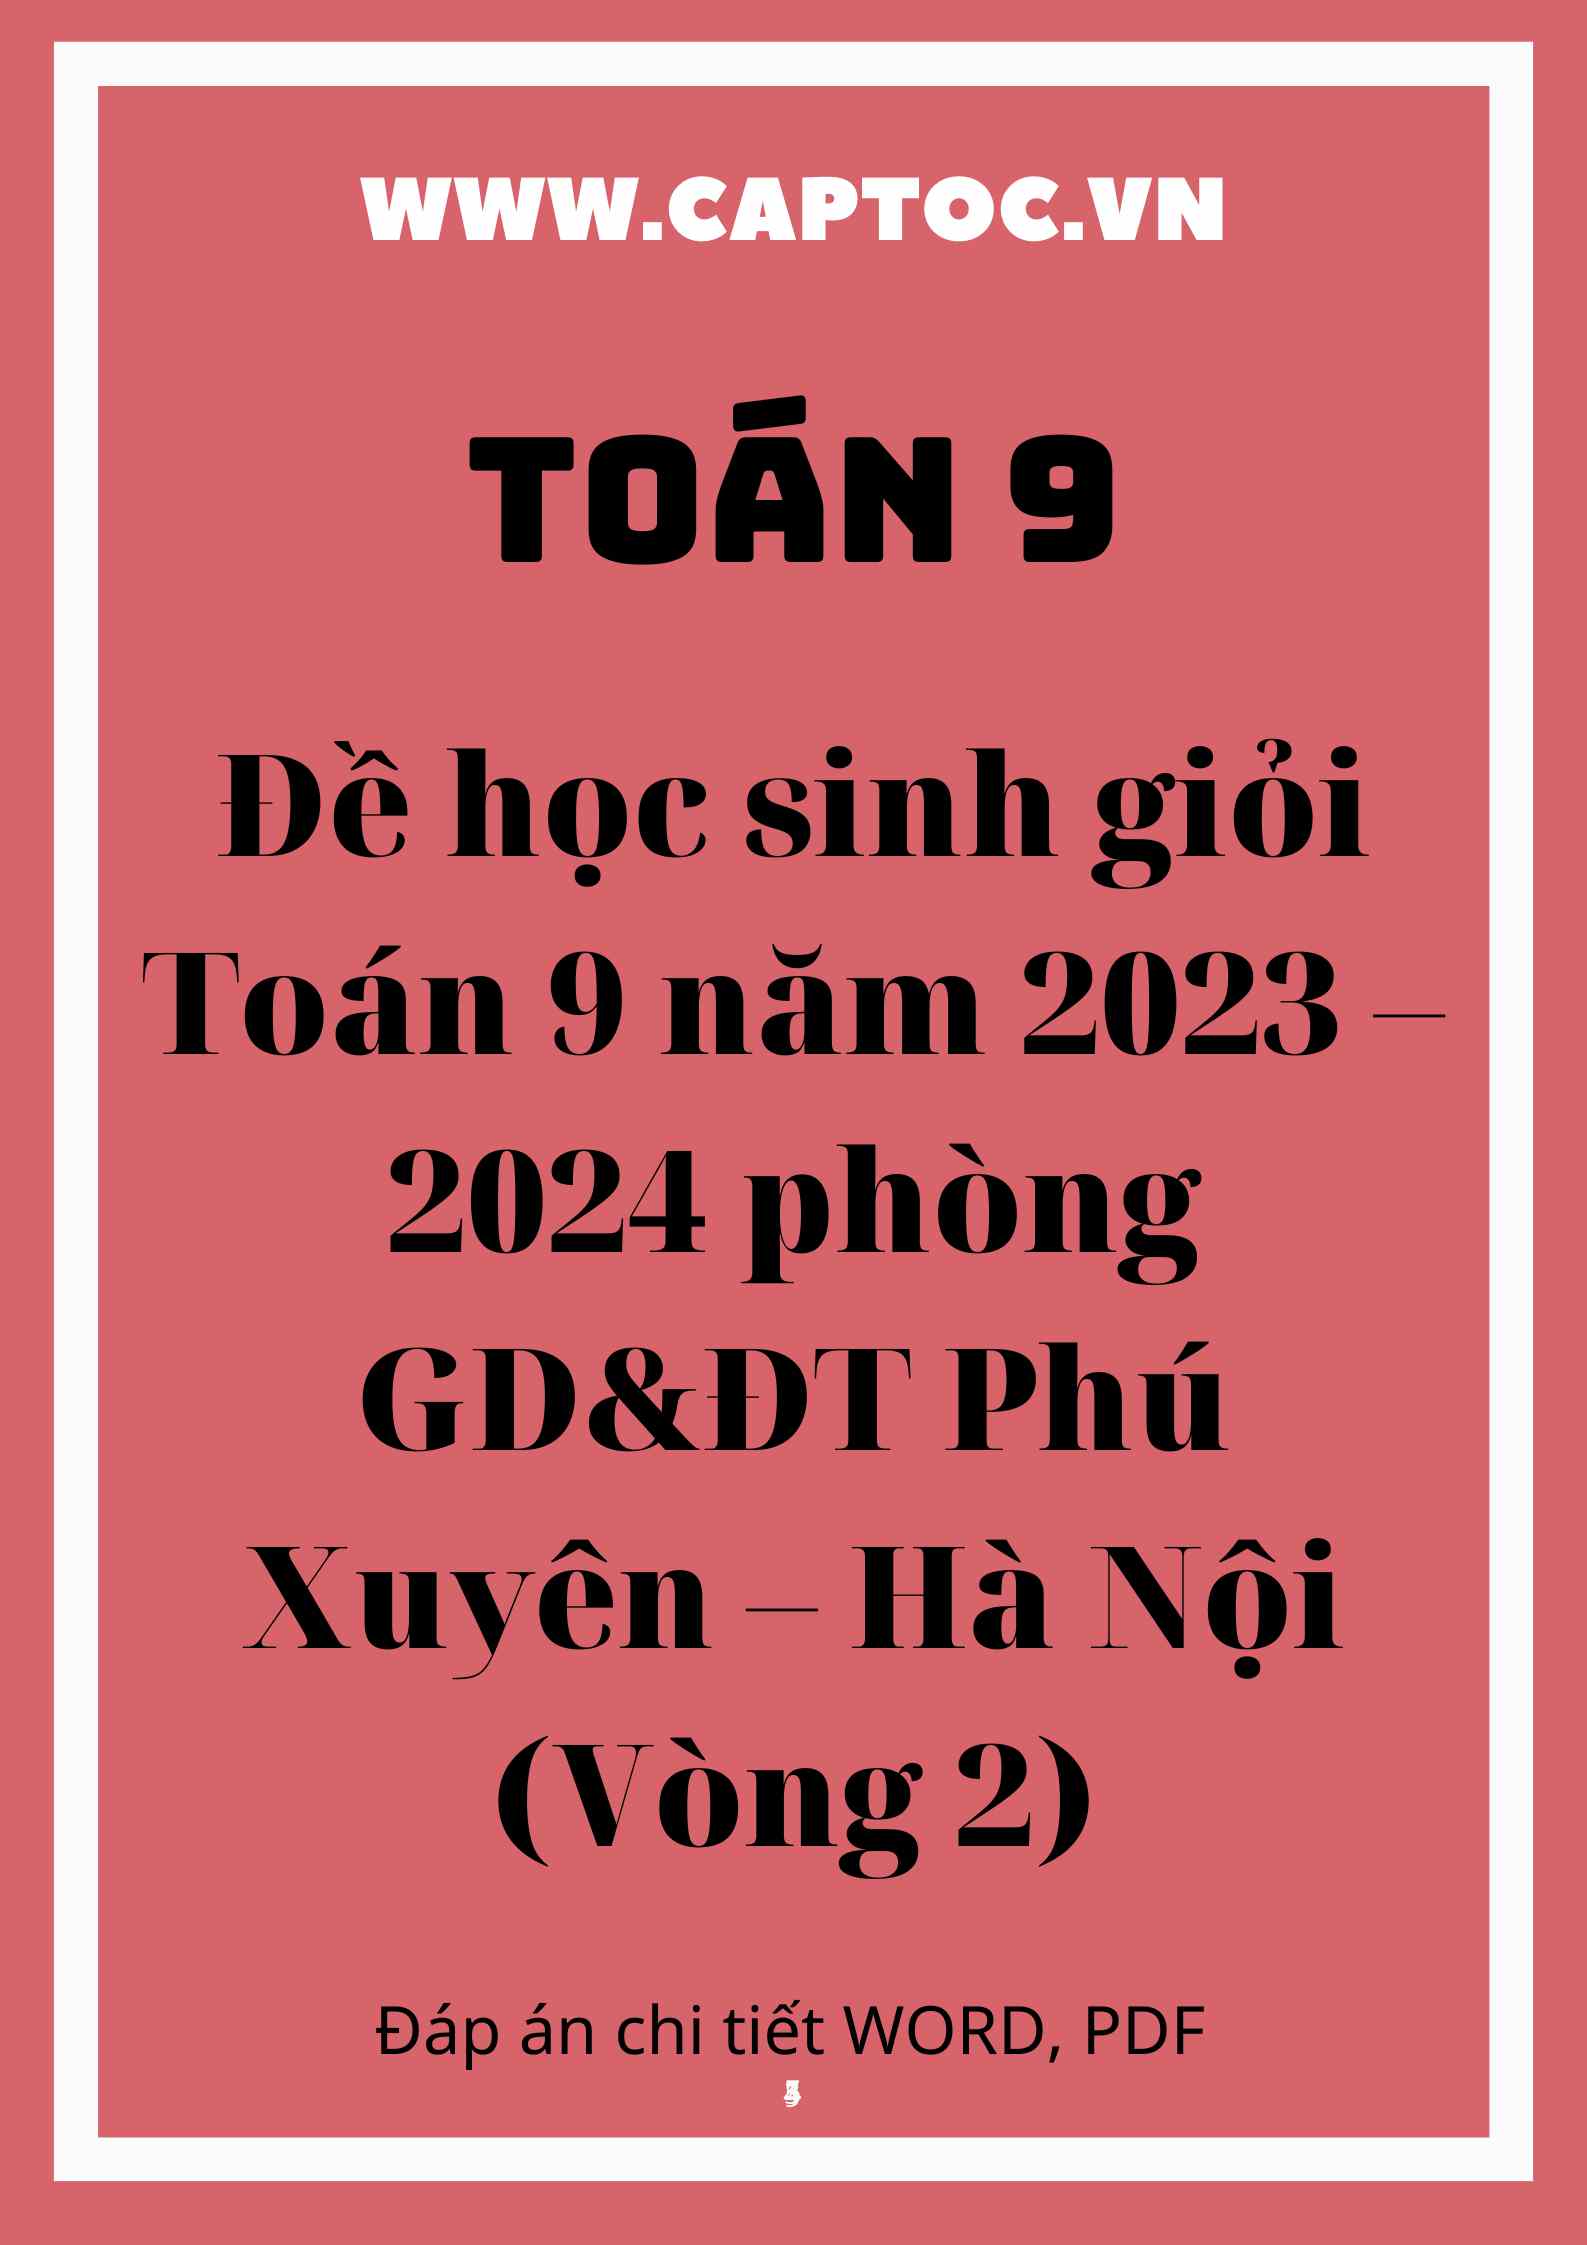 Đề học sinh giỏi Toán 9 năm 2023 – 2024 phòng GD&ĐT Phú Xuyên – Hà Nội (Vòng 2)